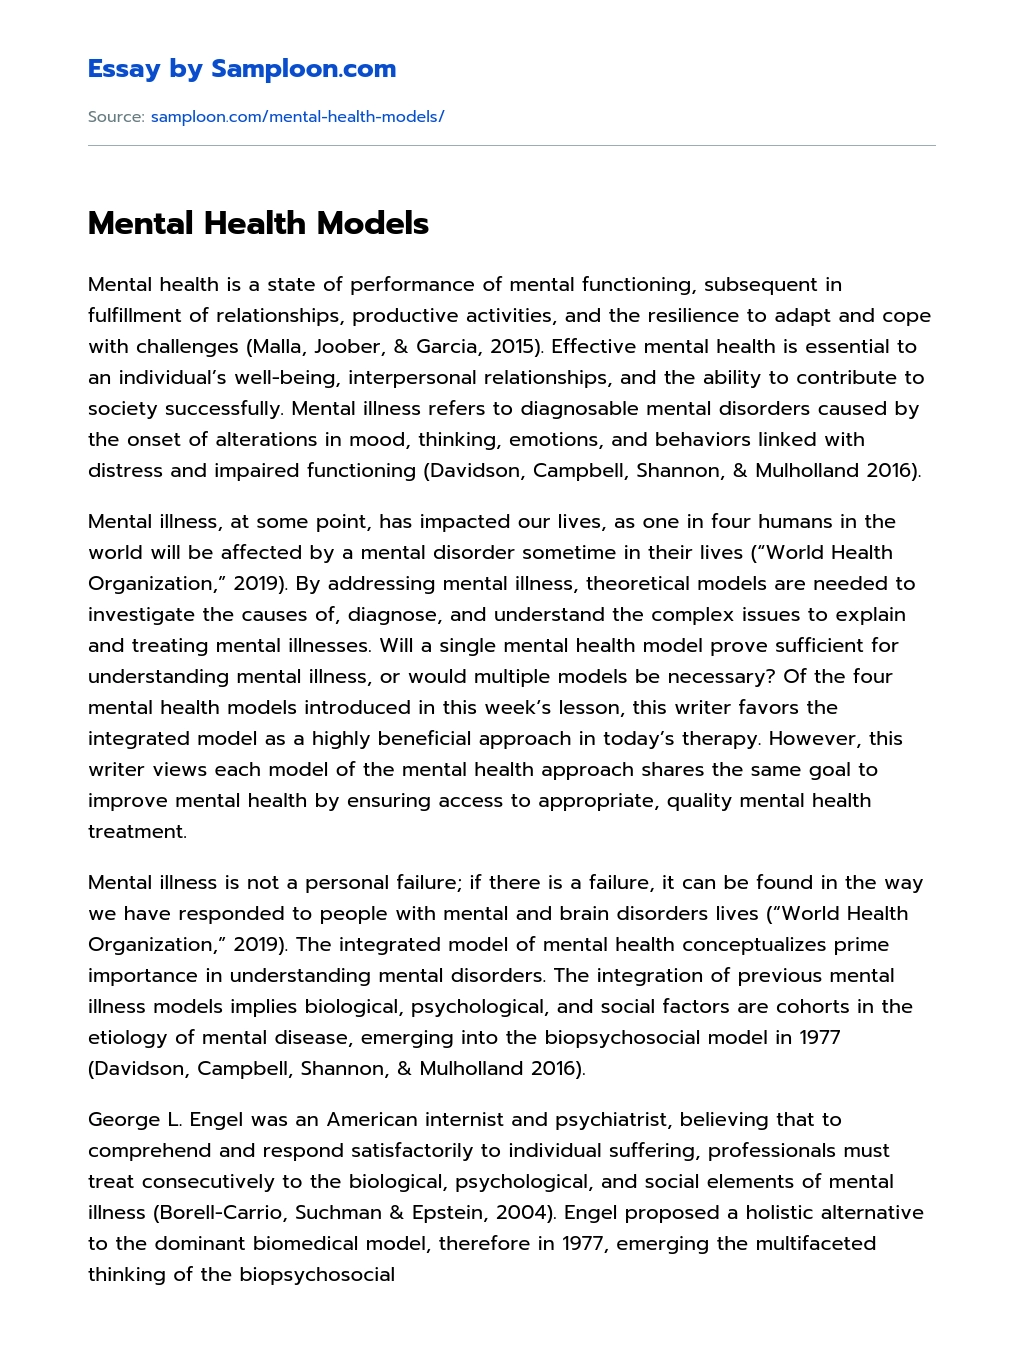 Mental Health Models essay